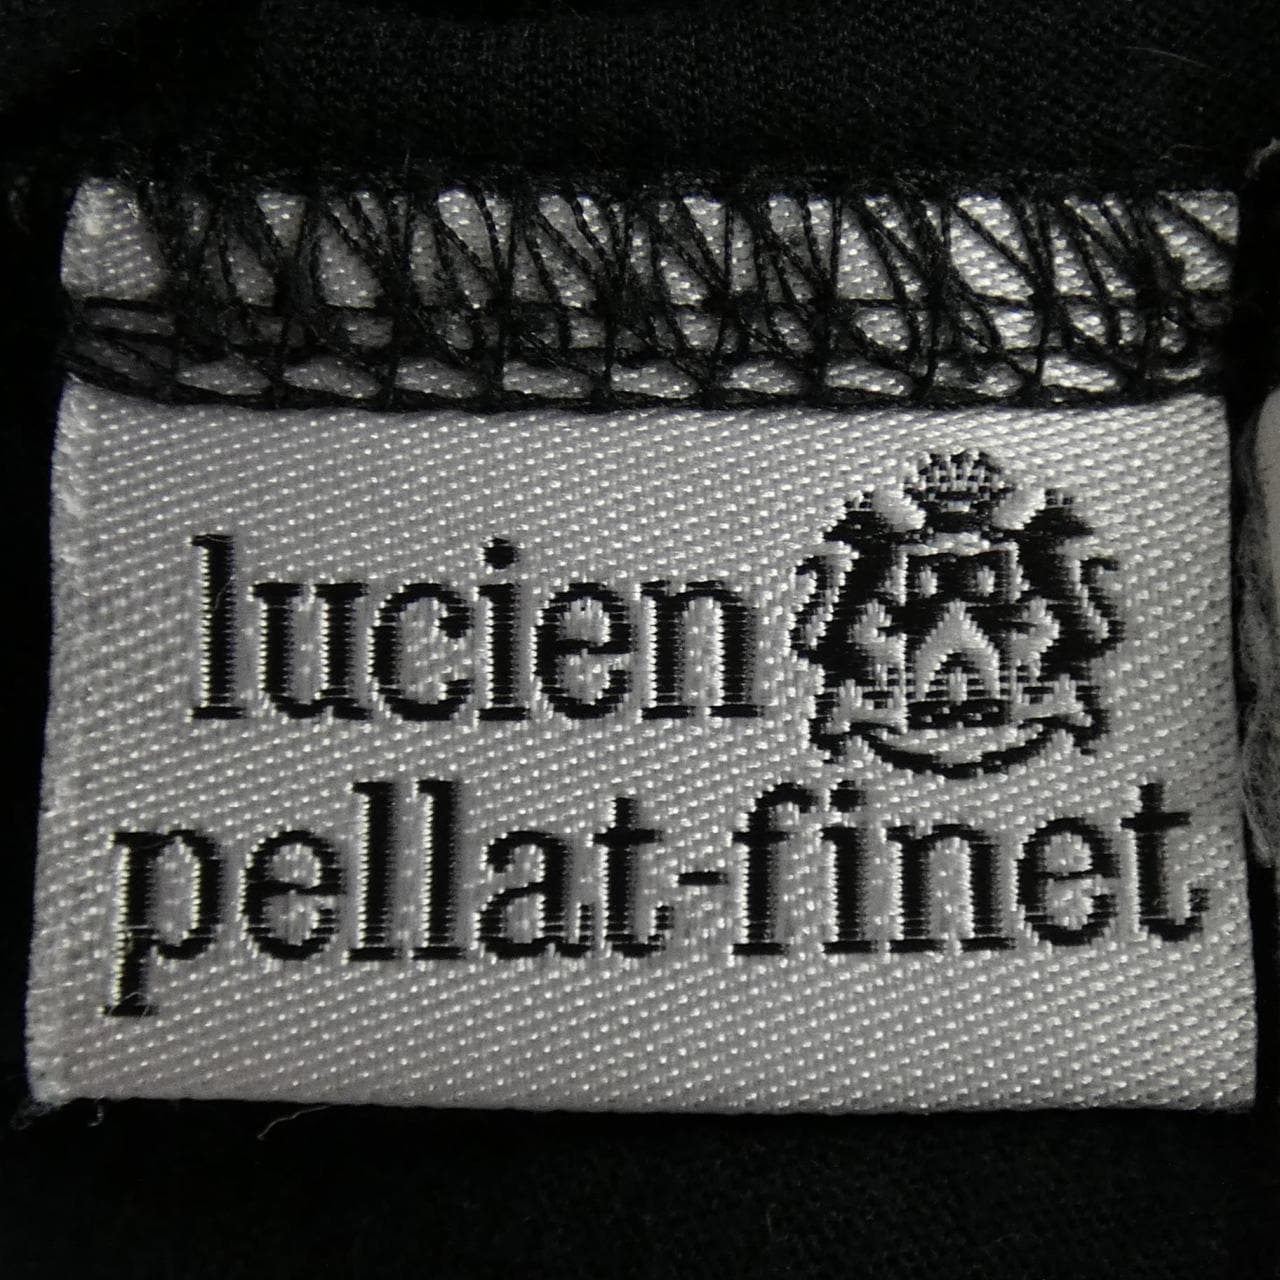 ルシアン ペラフィネ lucien pellat-finet Tシャツ